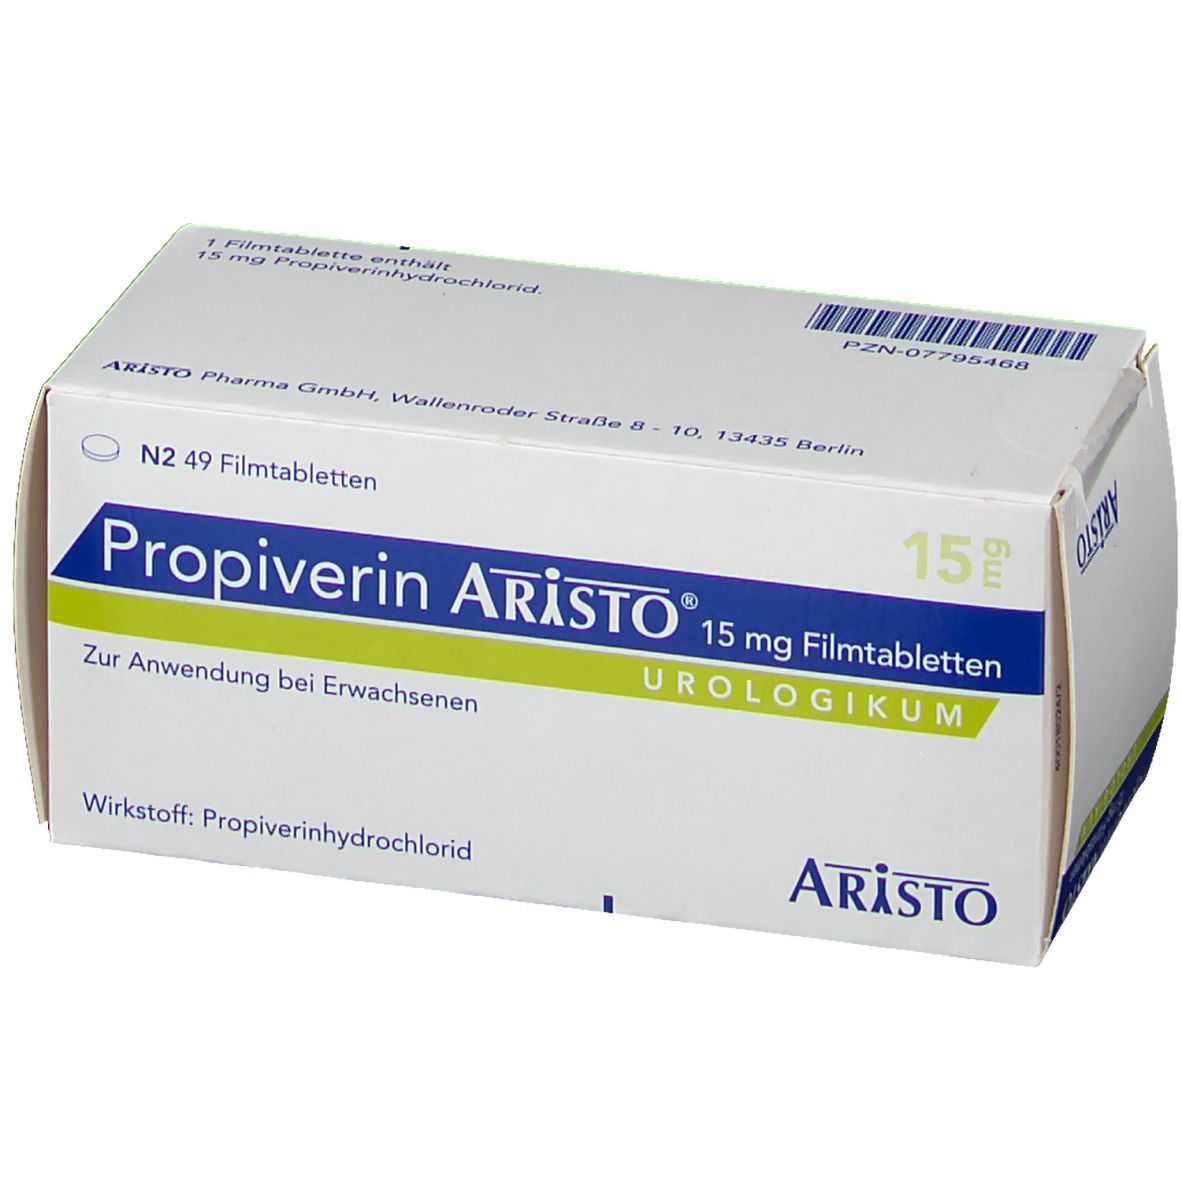 Propiverin Aristo® 15 mg